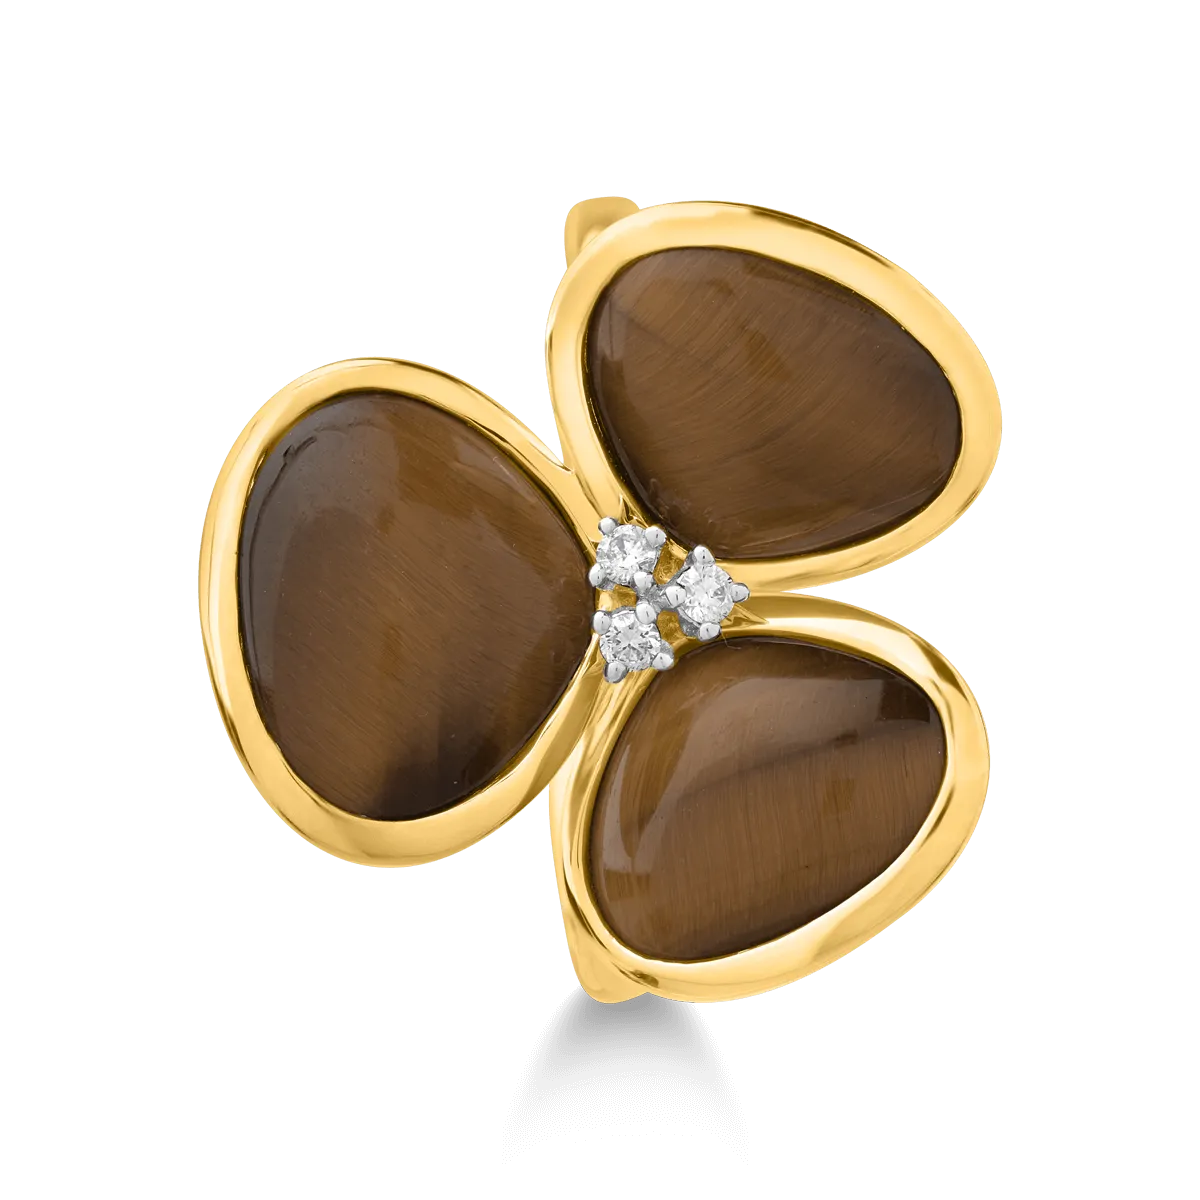 Gyűrű 18K-os sárga aranyból 7,555ct tigrisszemmel (kvarc féle, homályos) és 0,04ct gyémántokkal. Gramm: 4,78